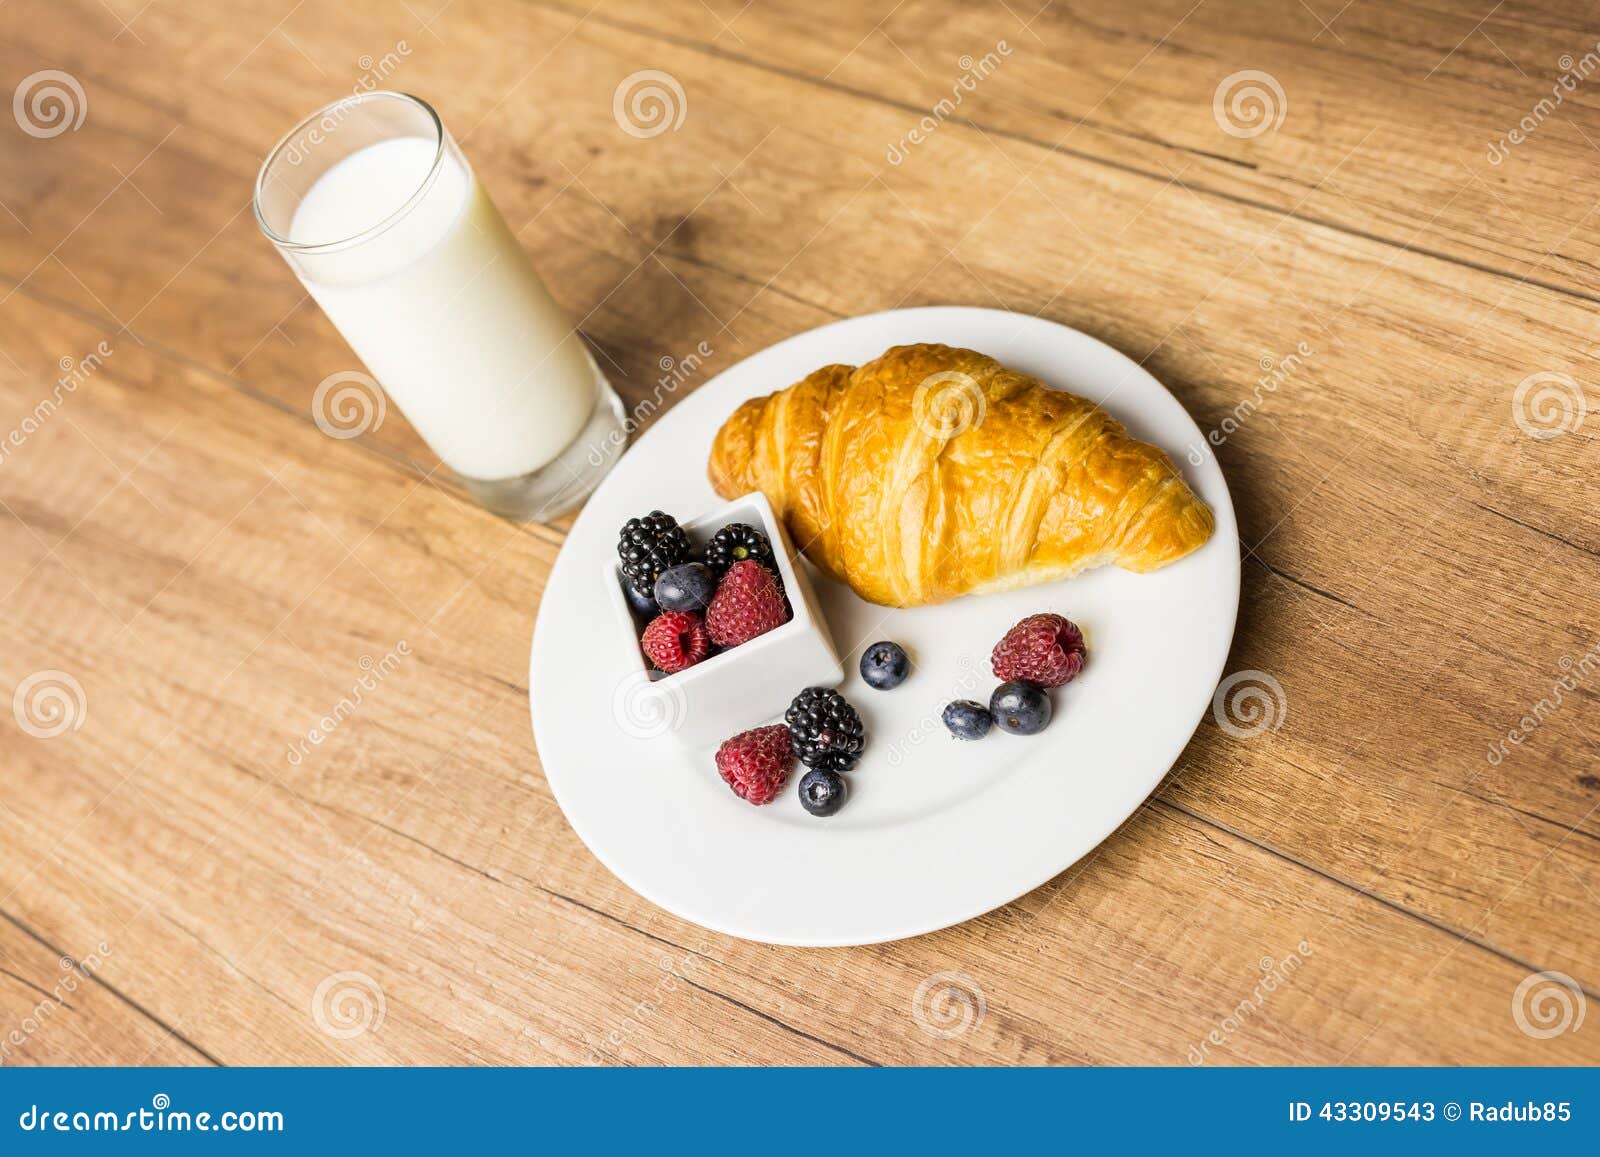 Здоровый завтрак круассана и молока. Здоровый завтрак с круассаном, молоком и свежими фруктами